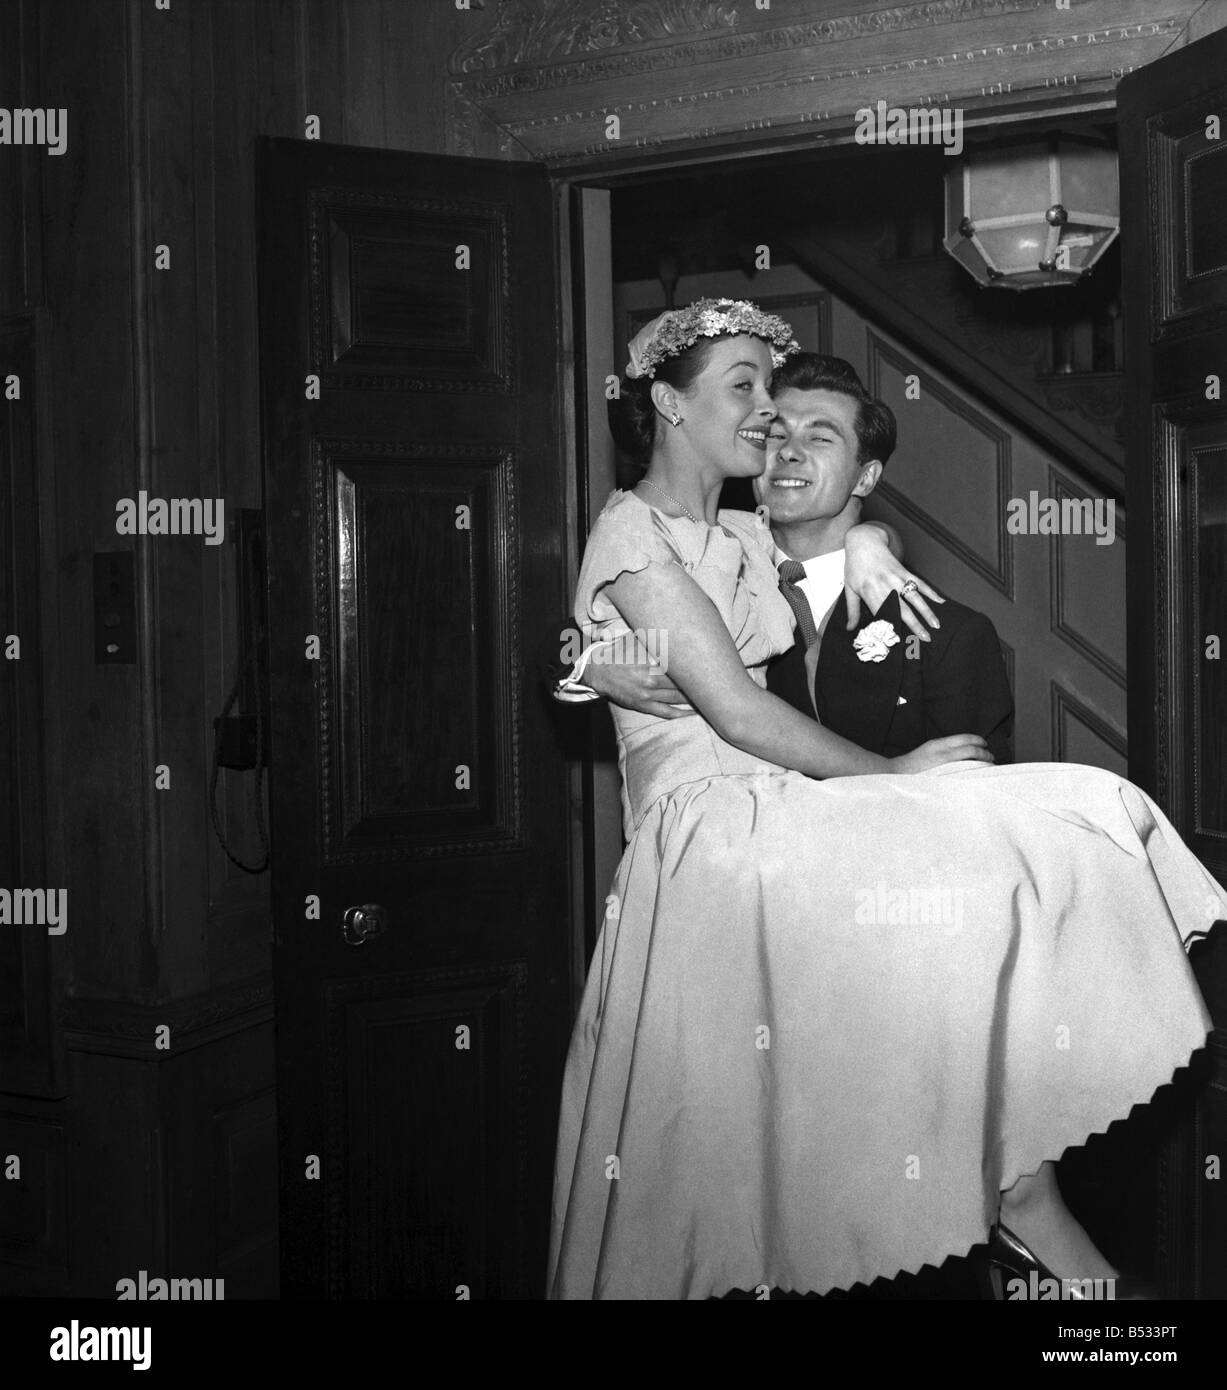 Hochzeit von Schauspieler Bryan Forbes und Schauspielerin Constance Smith - Katina Noble, im Alter von 1 Jahr, die ihren Geburtstag bei der Hochzeit feierte. Februar 1951 B679-002 Stockfoto